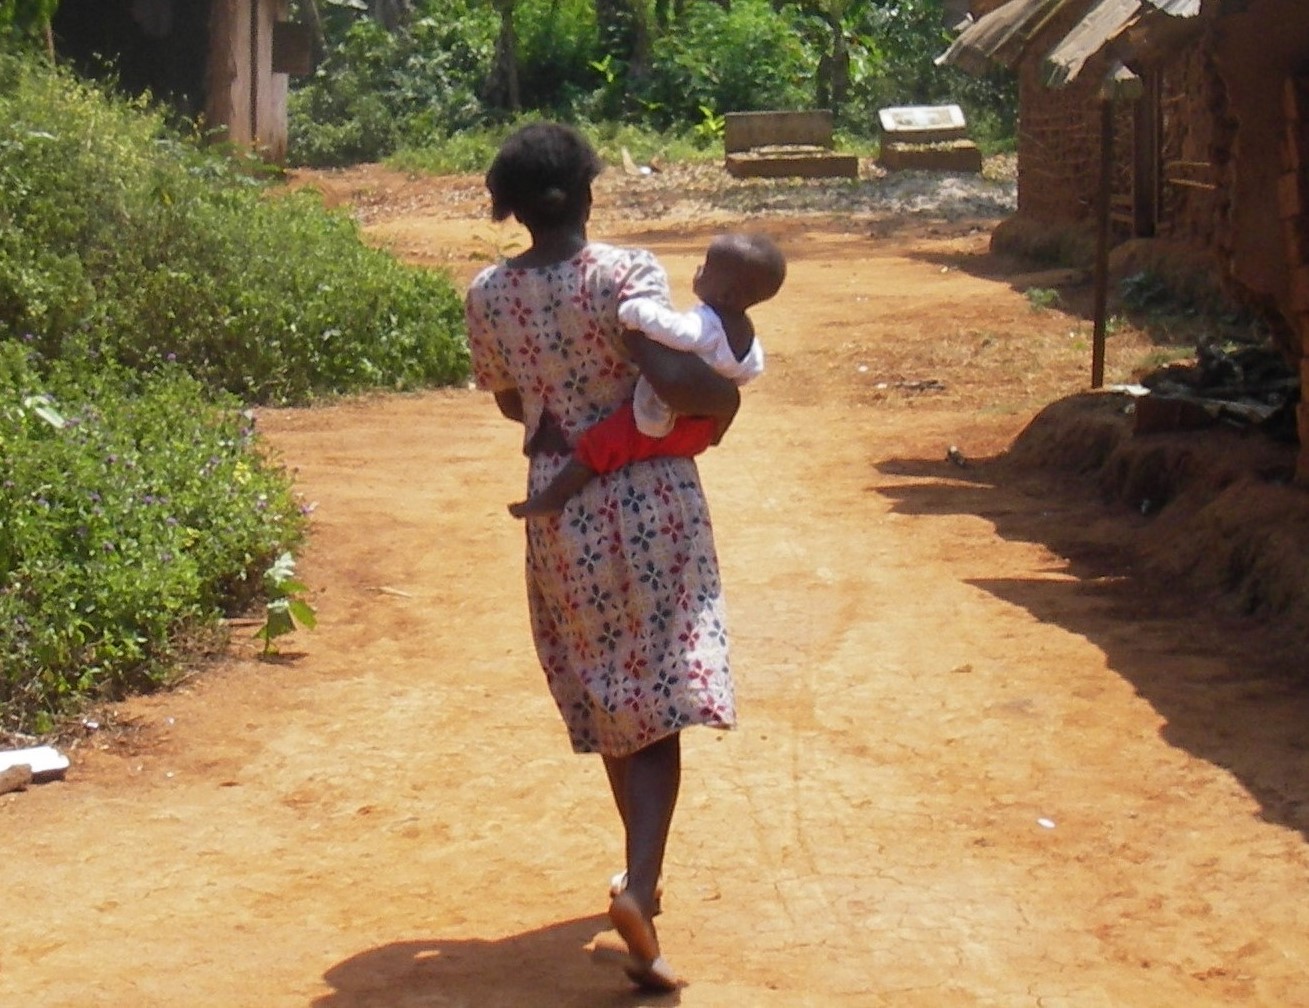 Premiers résultats cliniques prometteurs d’un vaccin visant à protéger les femmes enceintes du paludisme